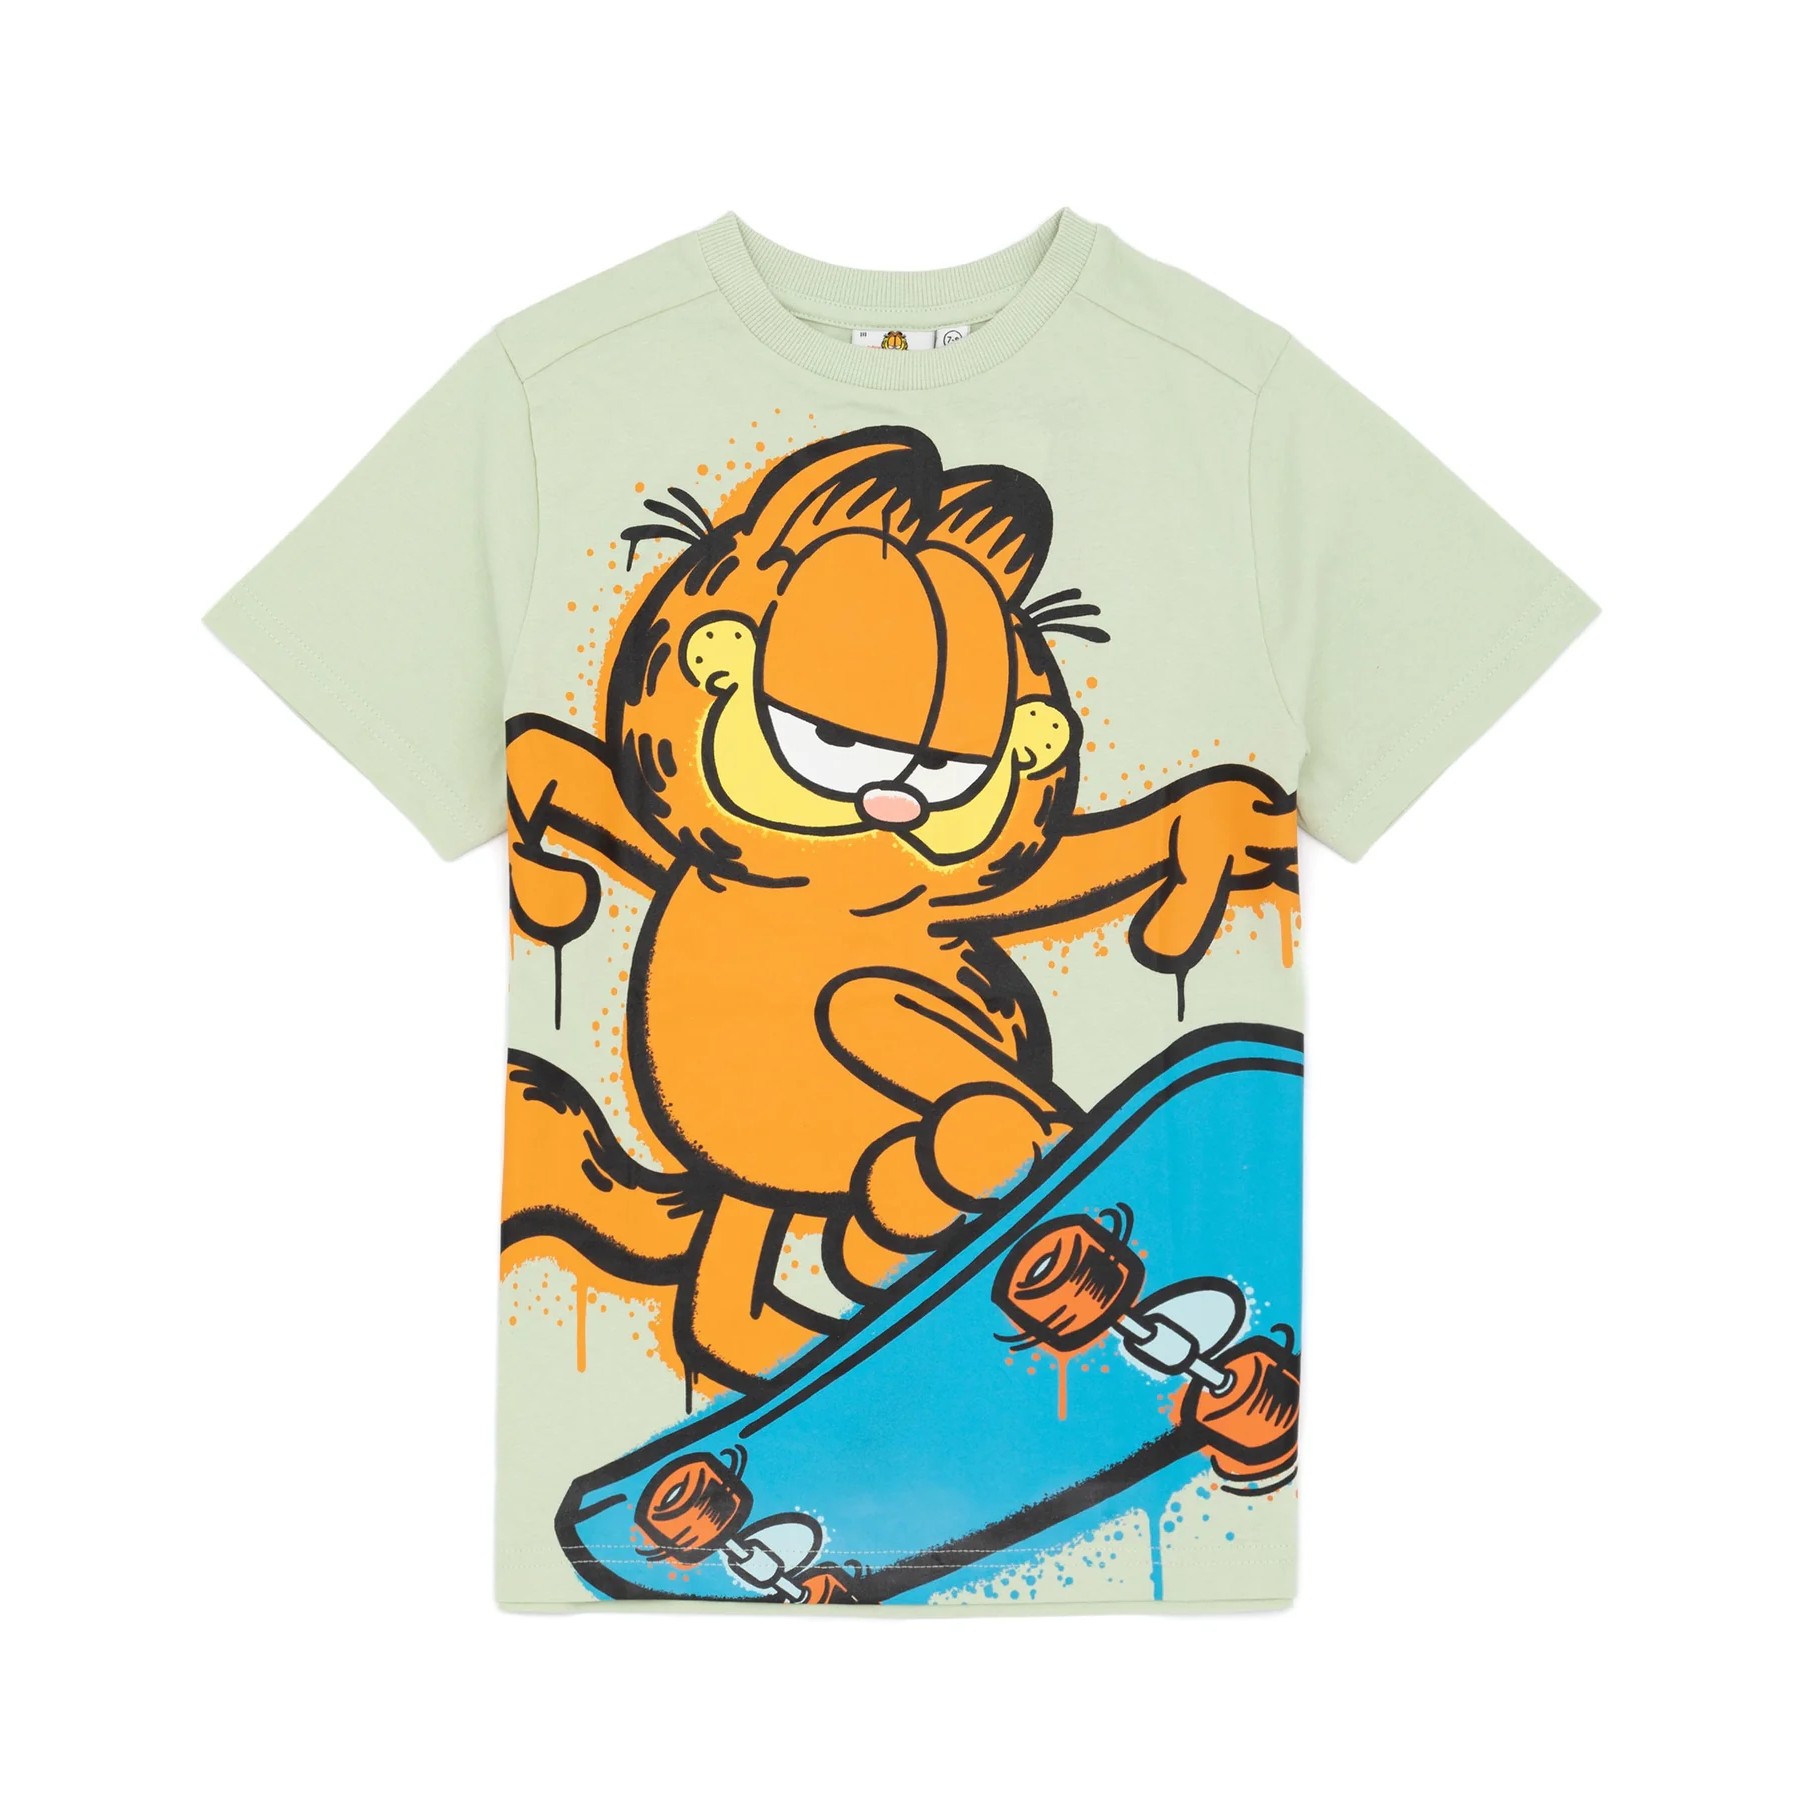 (ガーフィールド) Garfield オフィシャル商品 キッズ・子供 スケートボード Tシャツ 半袖 トップス カットソー 